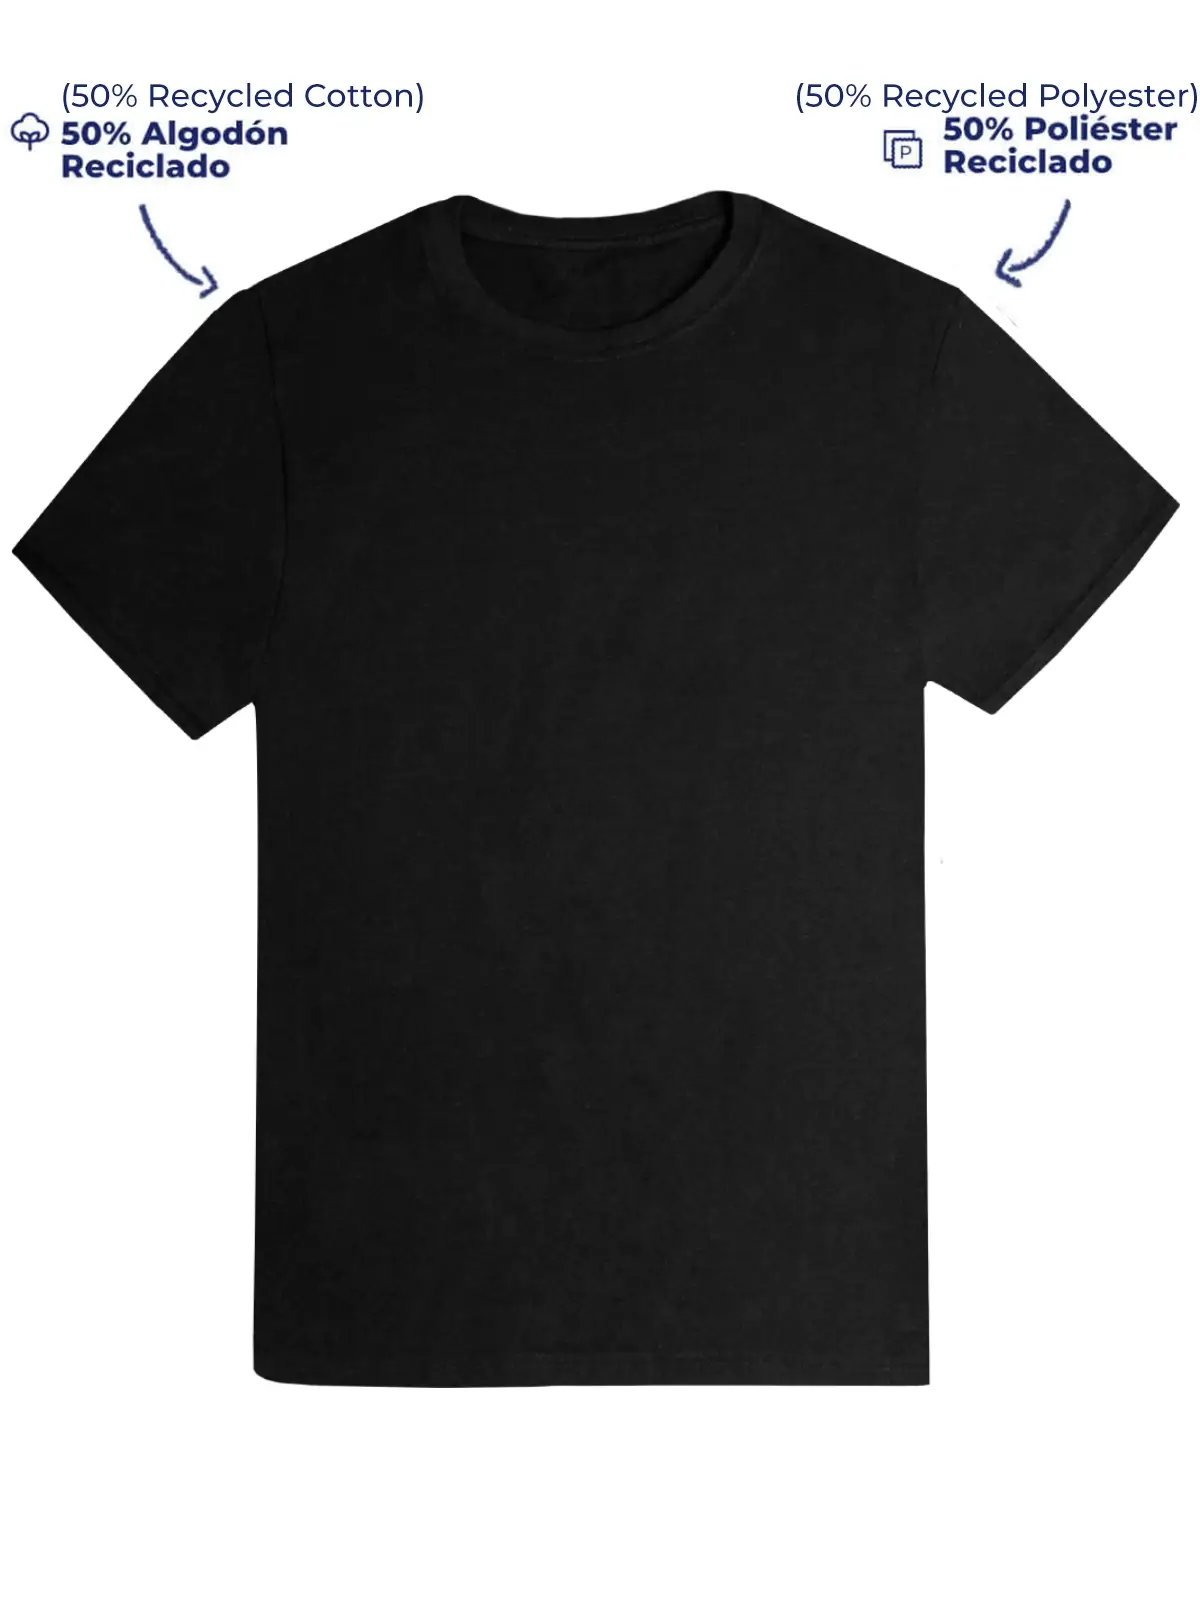 Eco-friendly T-Shirt black